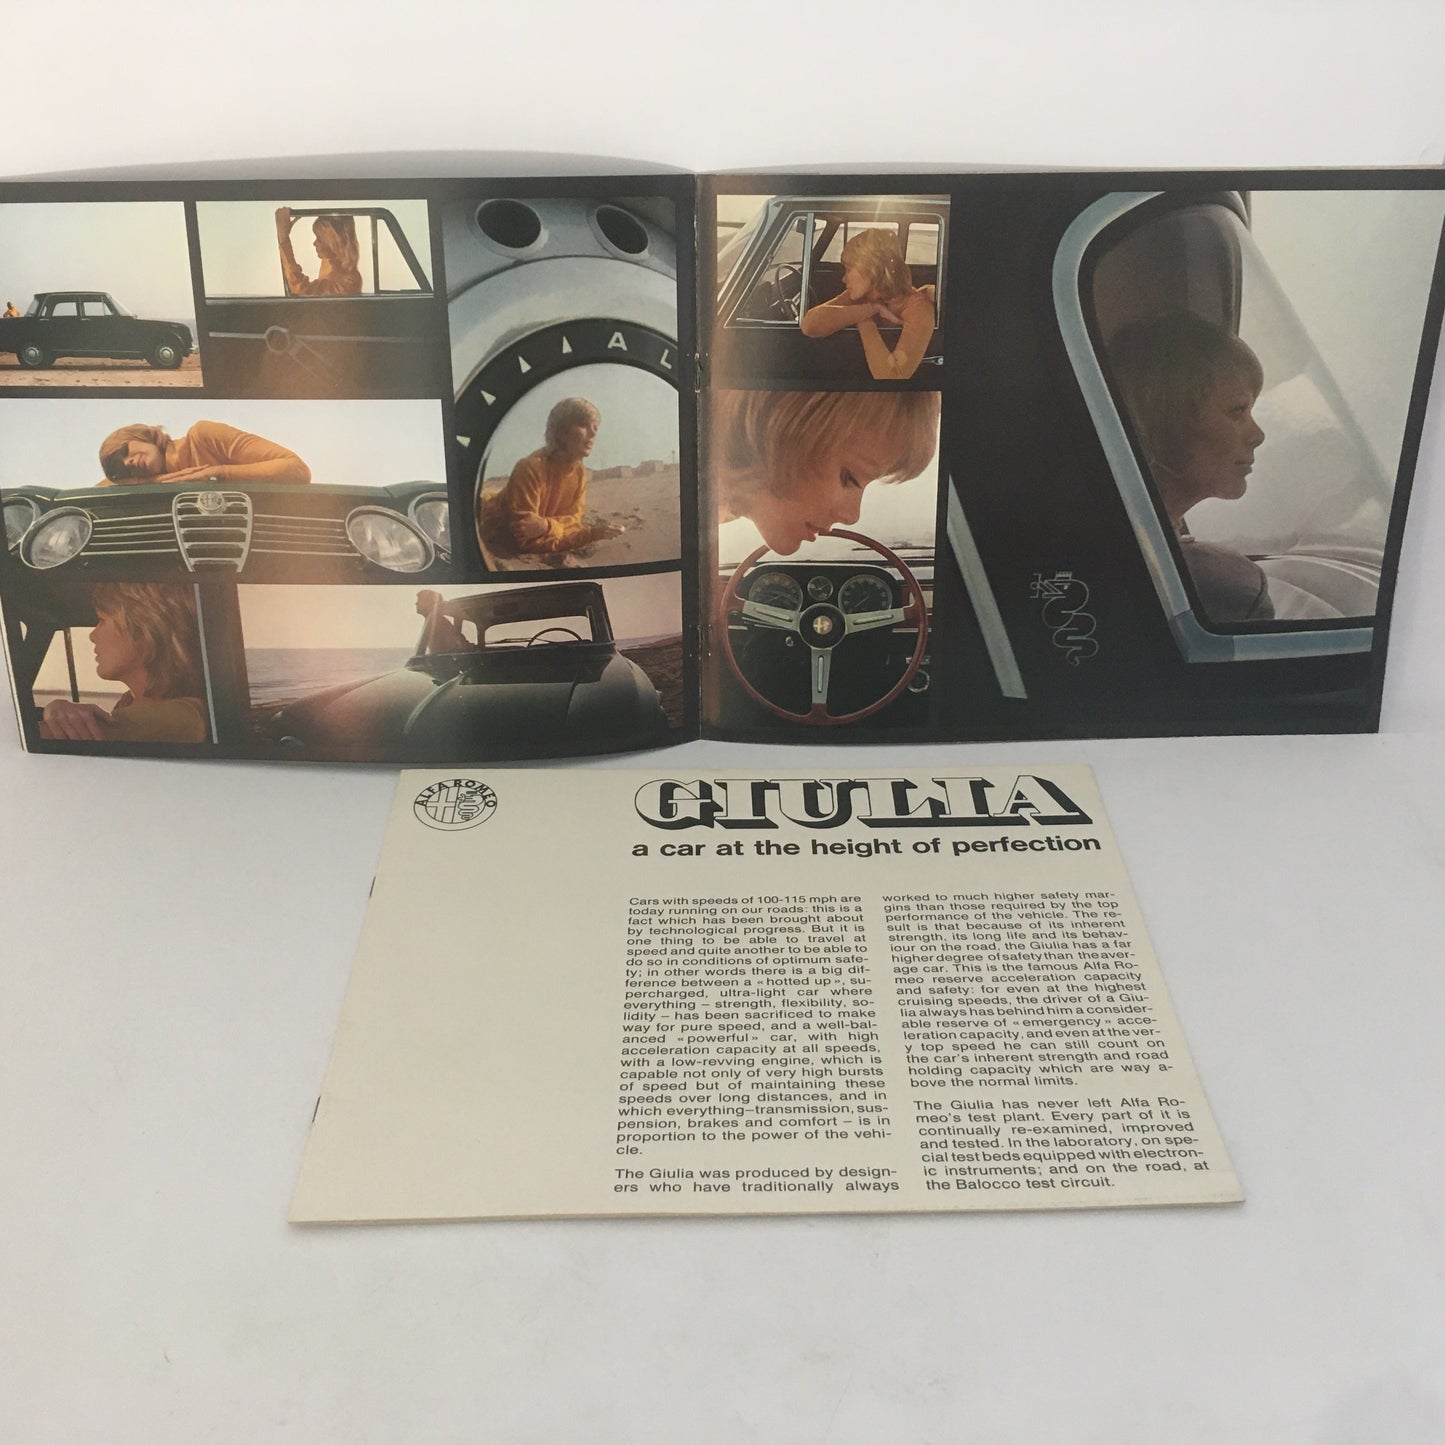 Alfa Romeo, Giulia 1600 Super Alfa Romeo Brochure, Alfa Romeo Giulia Insert,  Years 60s 70s , English Language